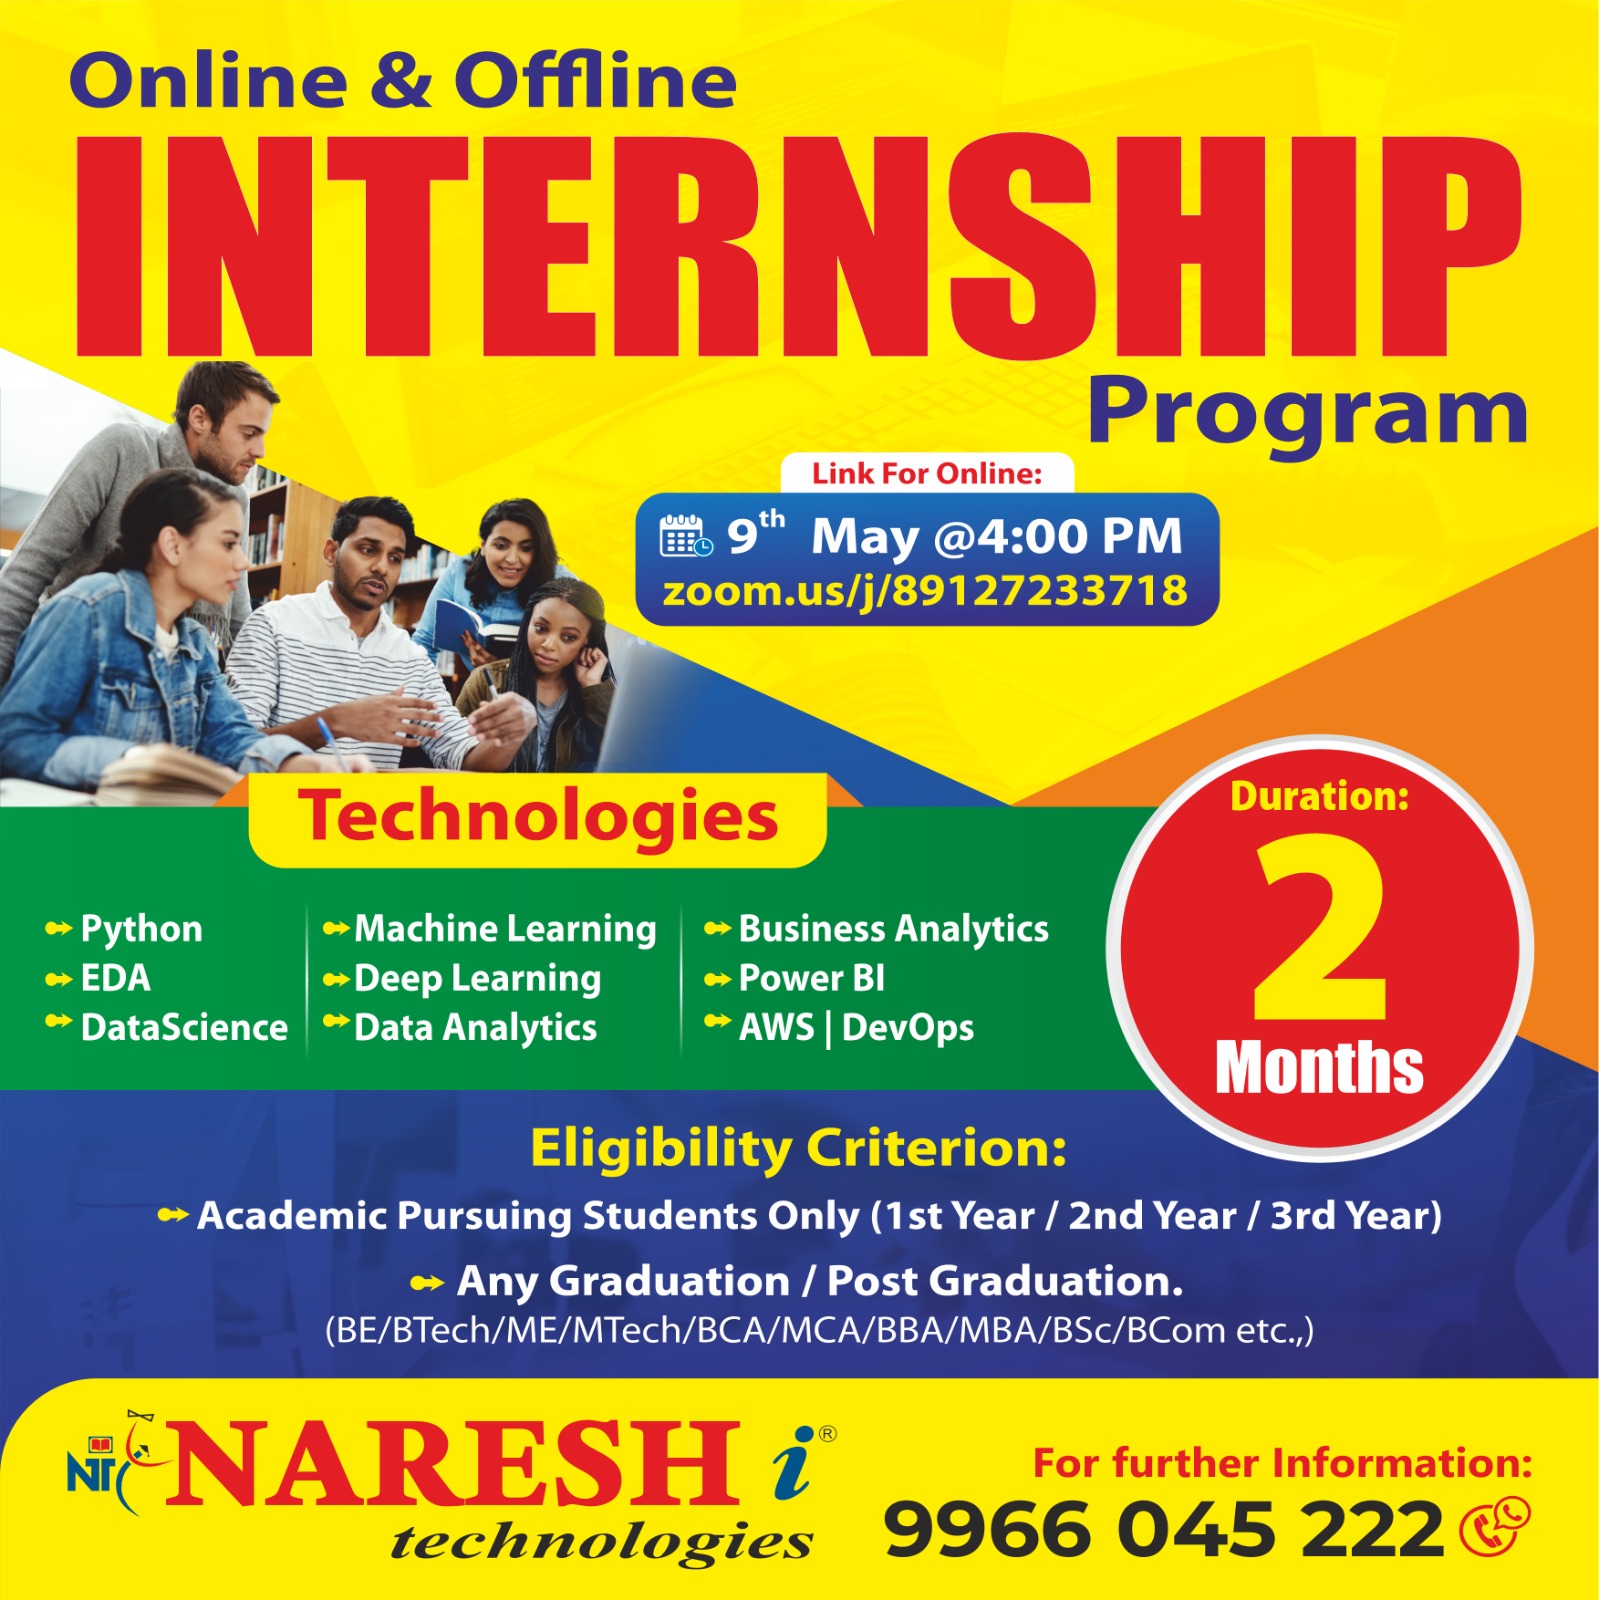 Attend Online & Offline Internship Program in NareshIT, Online Event